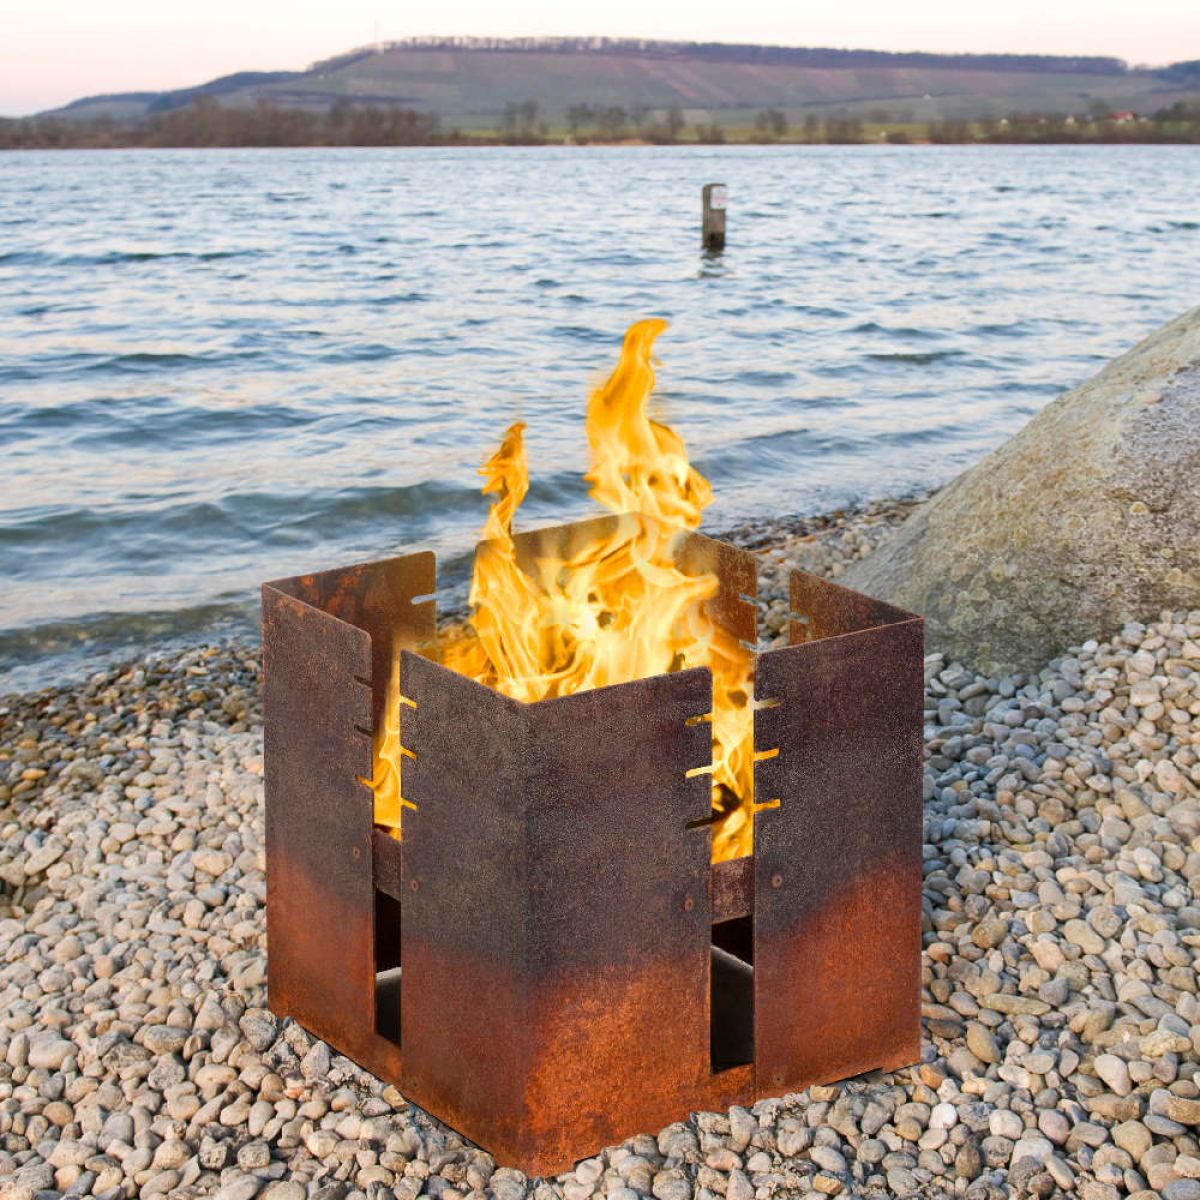 Würfelförmiger Feuerkorb aus wetterfestem Stahl mit Grillfunktion